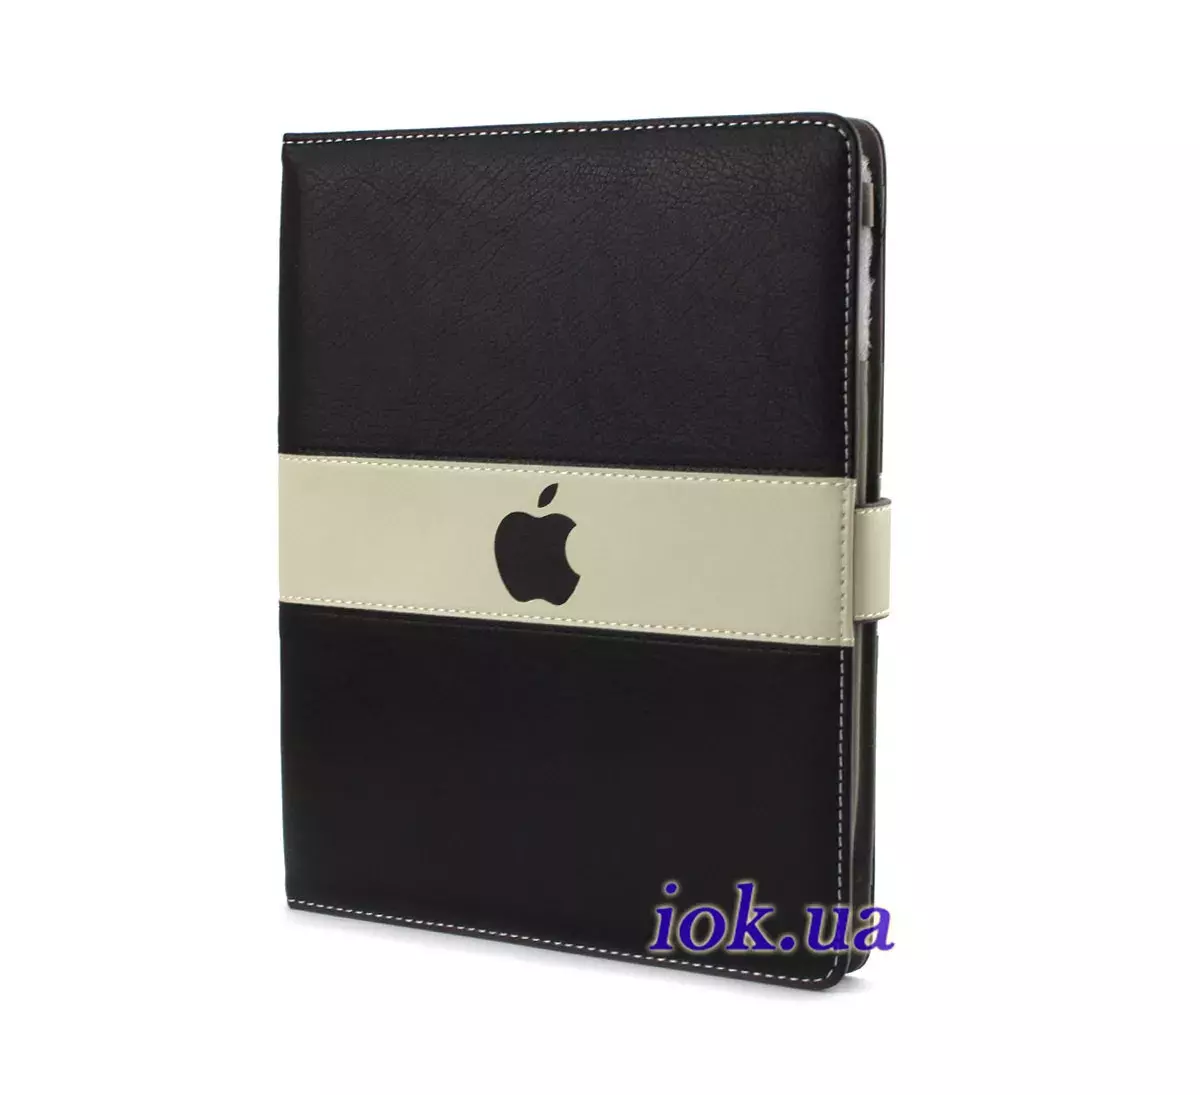 Чехол с яблочком Apple для iPad 2/3/4, черный